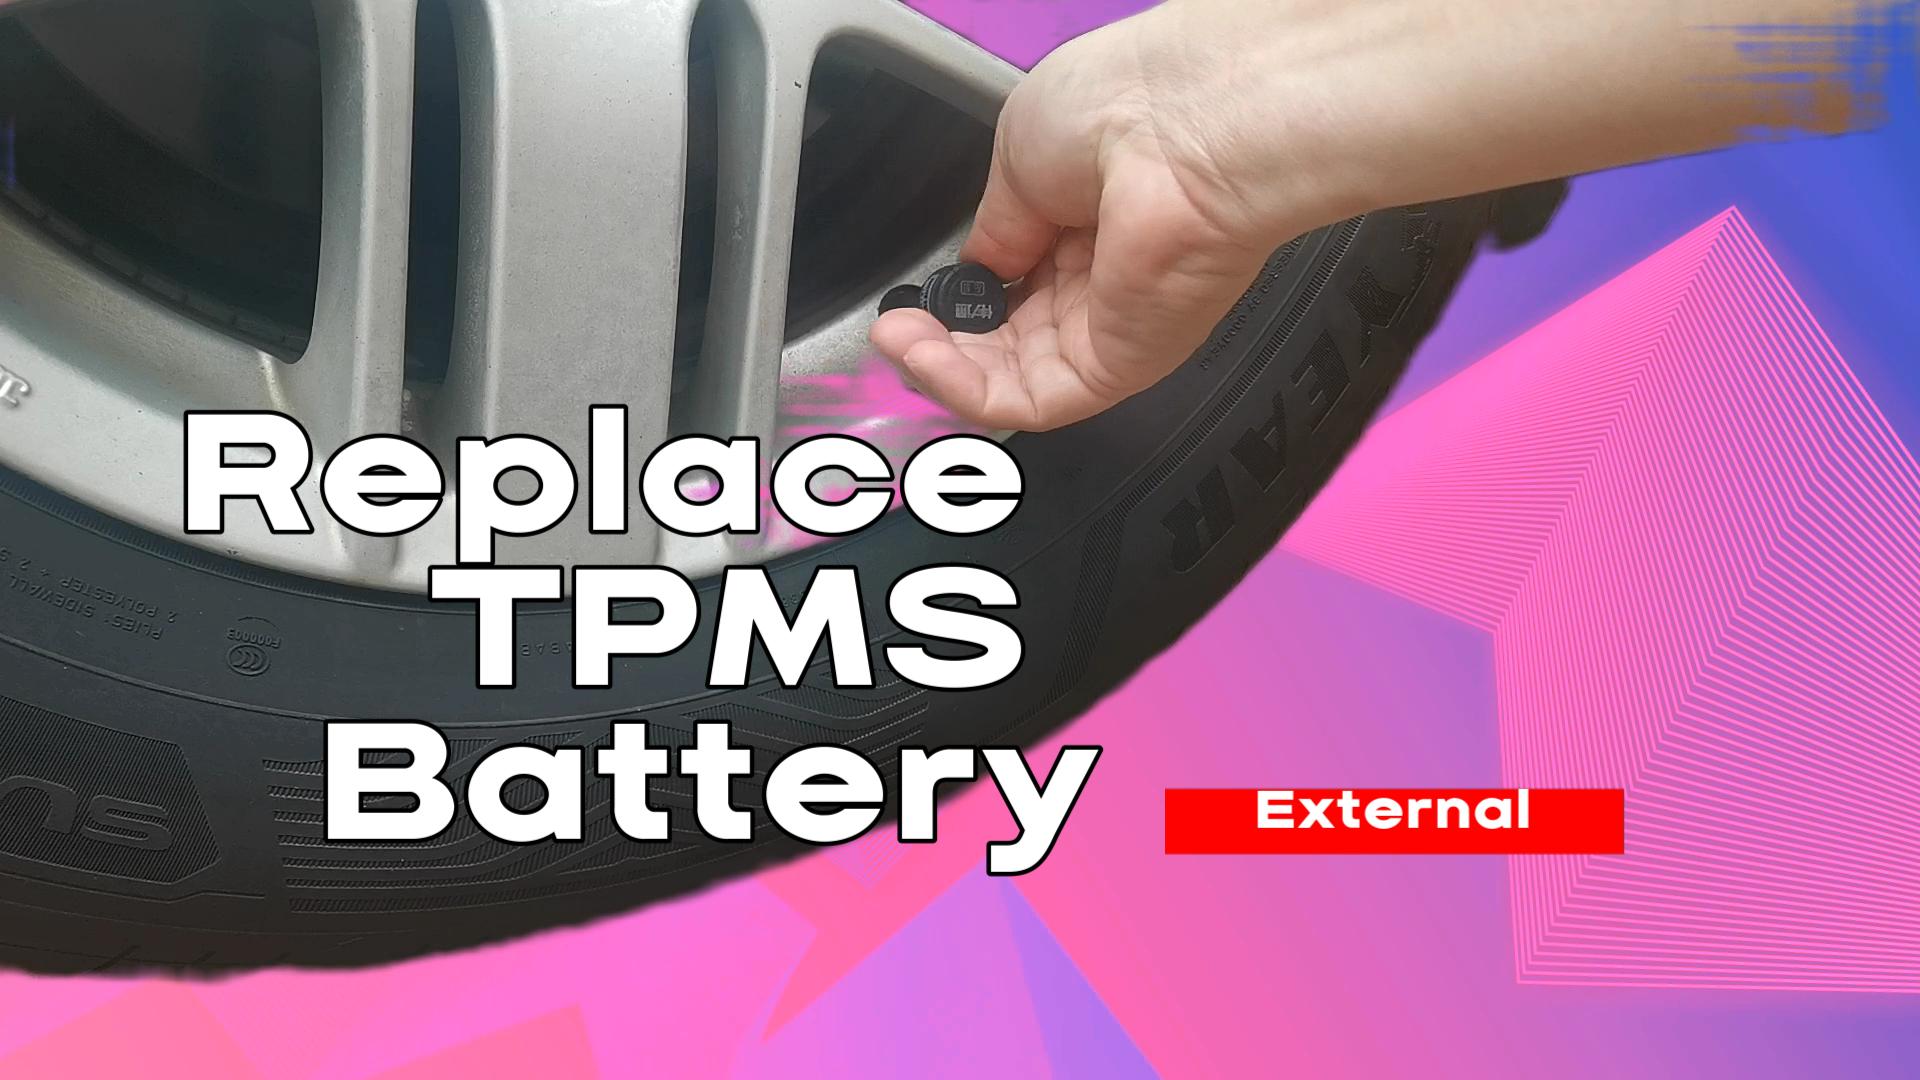 External TPMS battery change